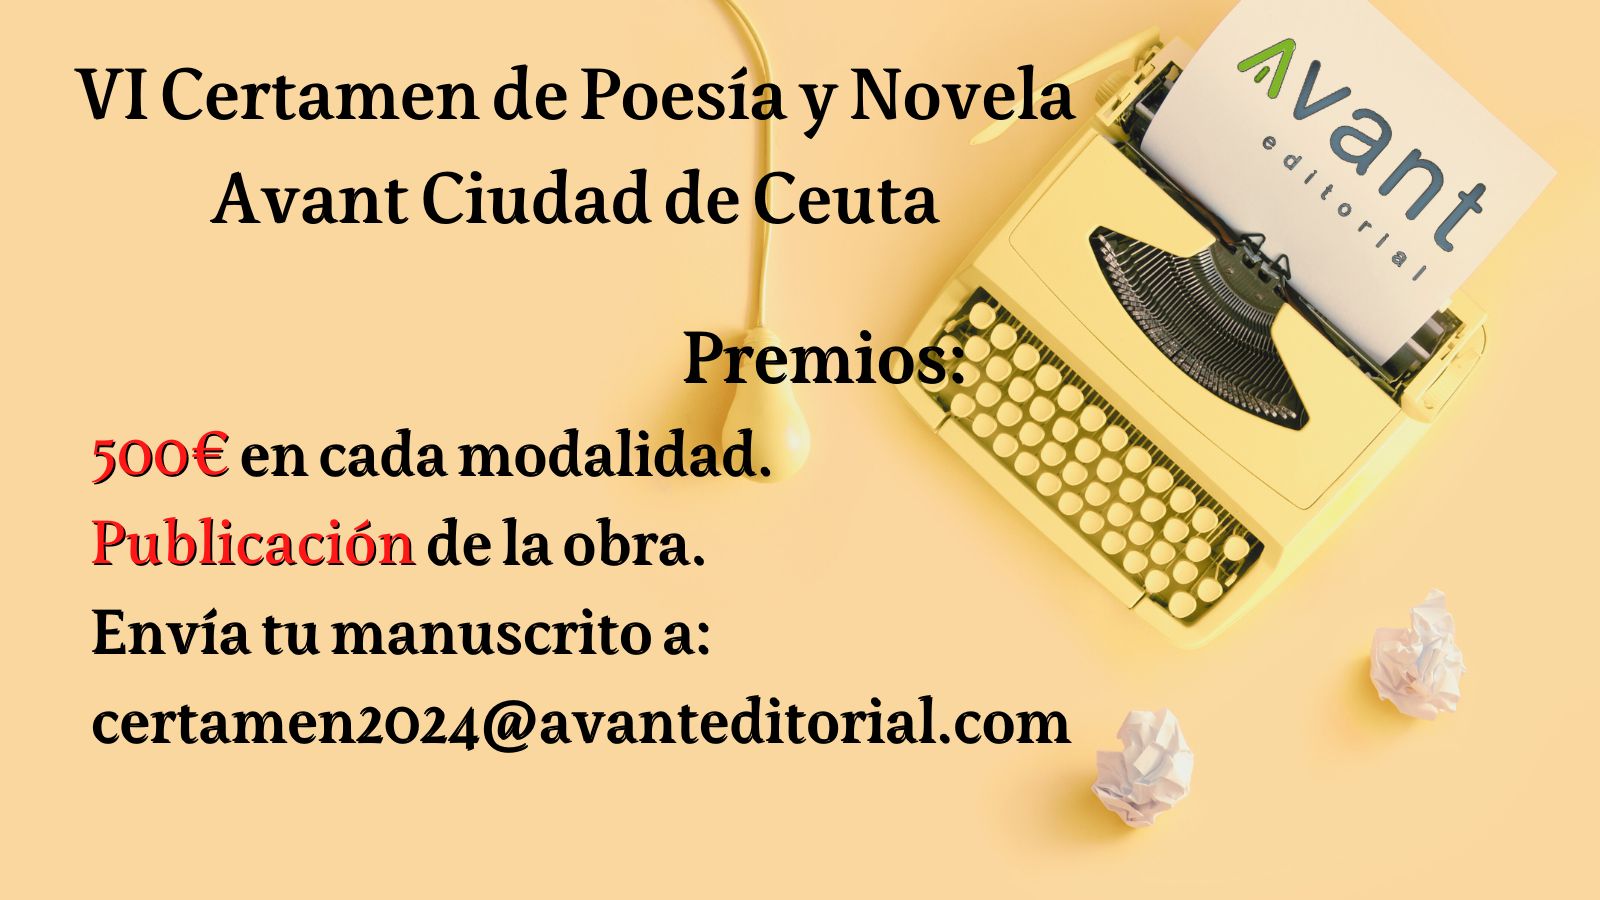 cartel-bueno-certamen-premio-poesia-novela-ciudad-ceuta-avant-editorial